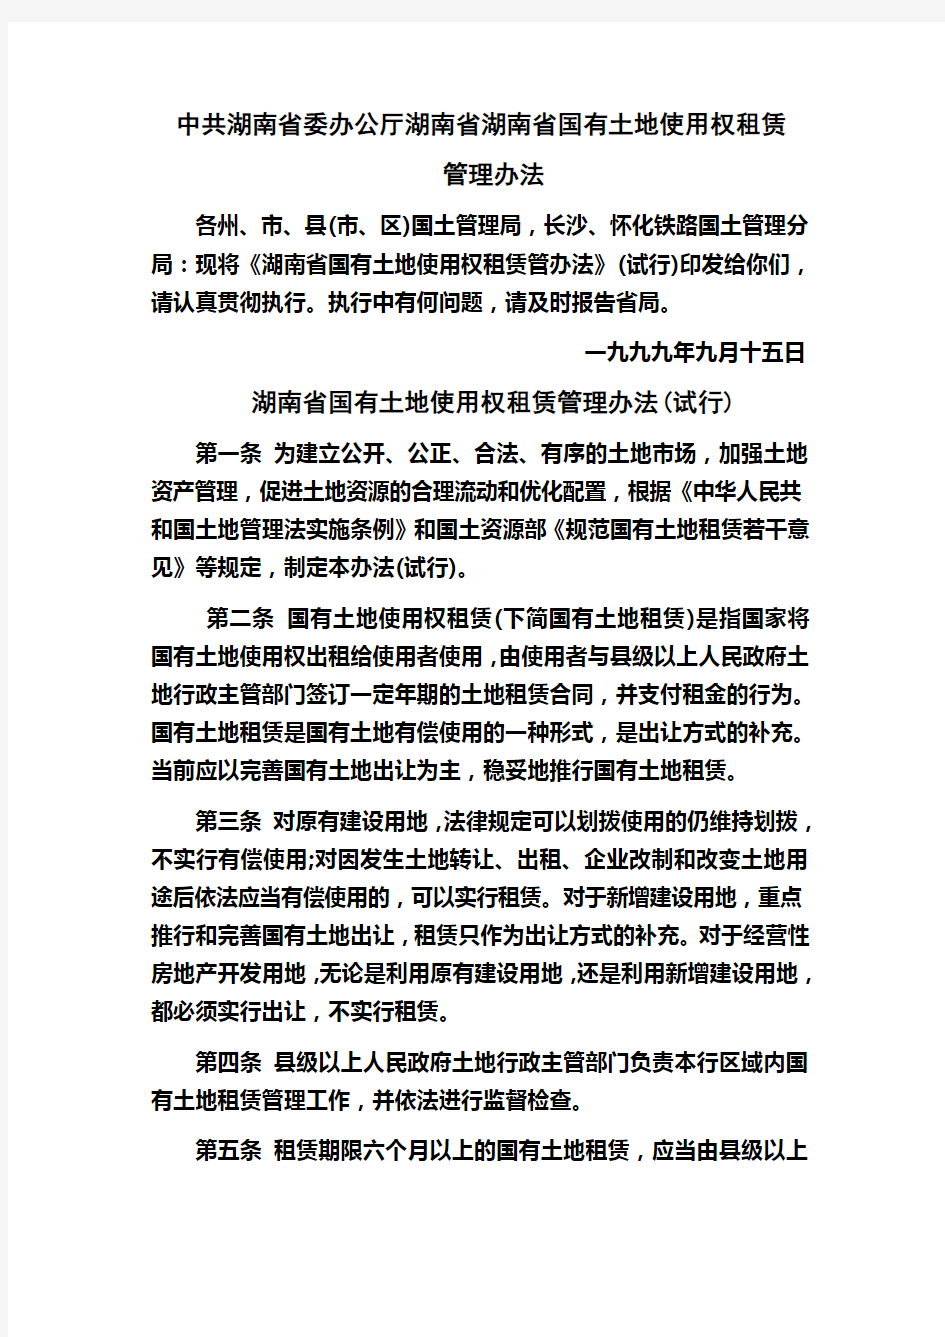 湖南省国有土地使用权租赁管理办法(试行)